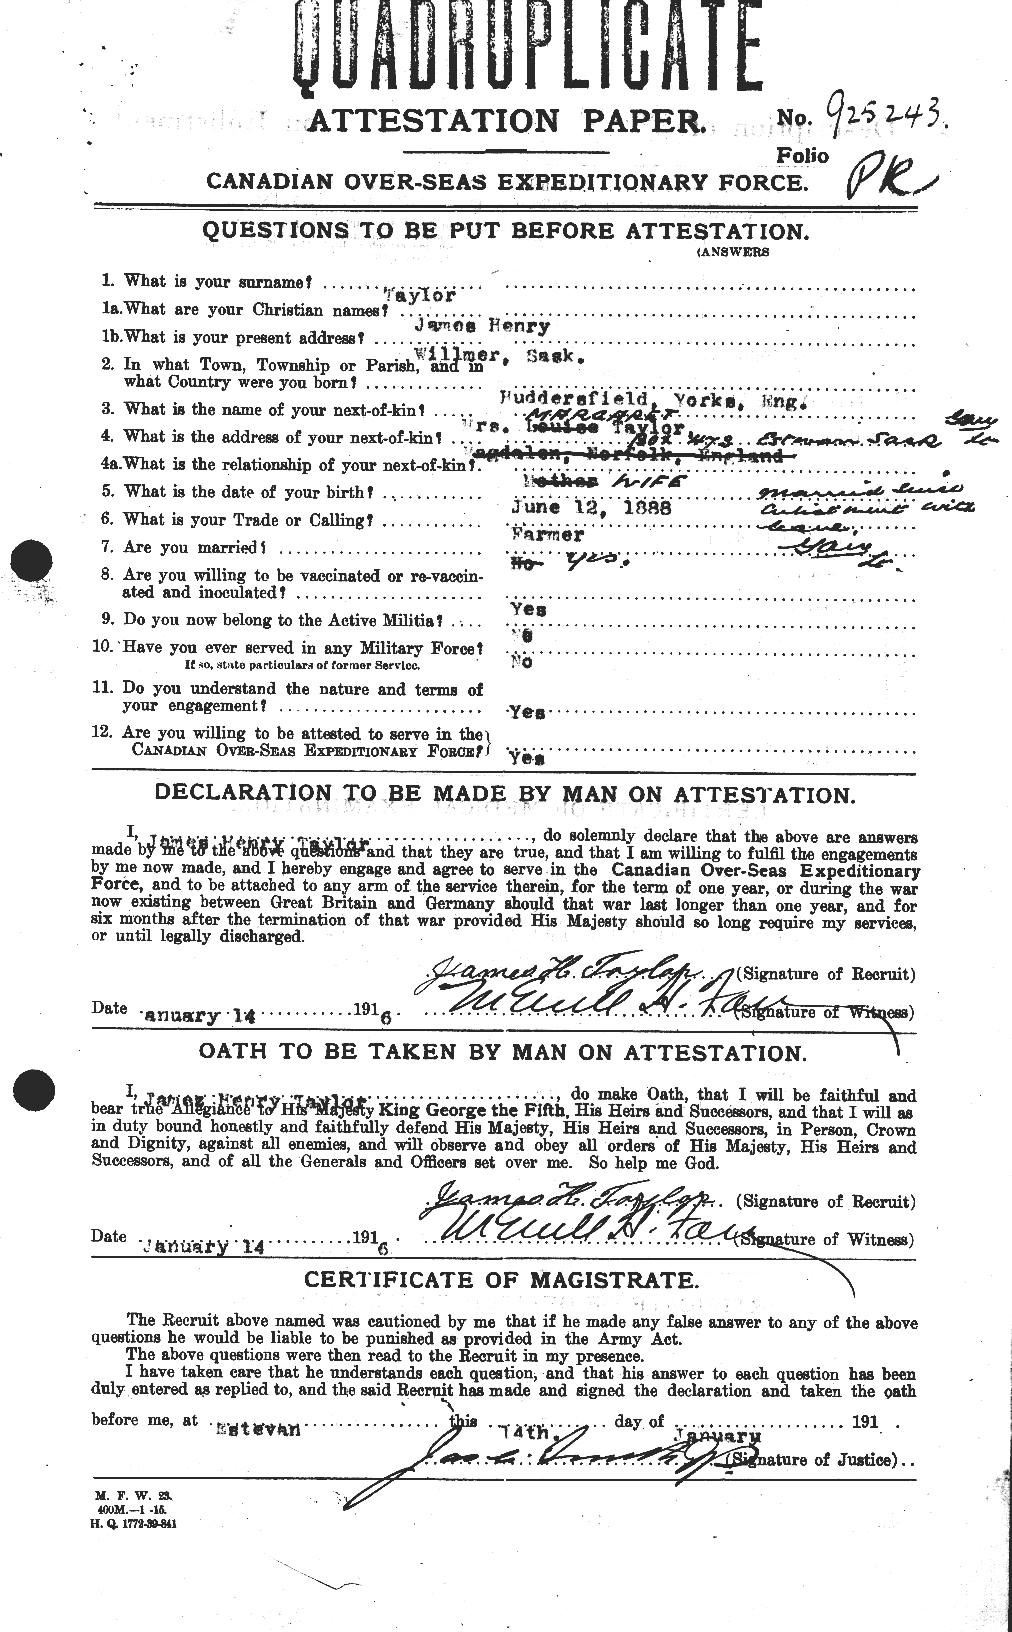 Dossiers du Personnel de la Première Guerre mondiale - CEC 626929a